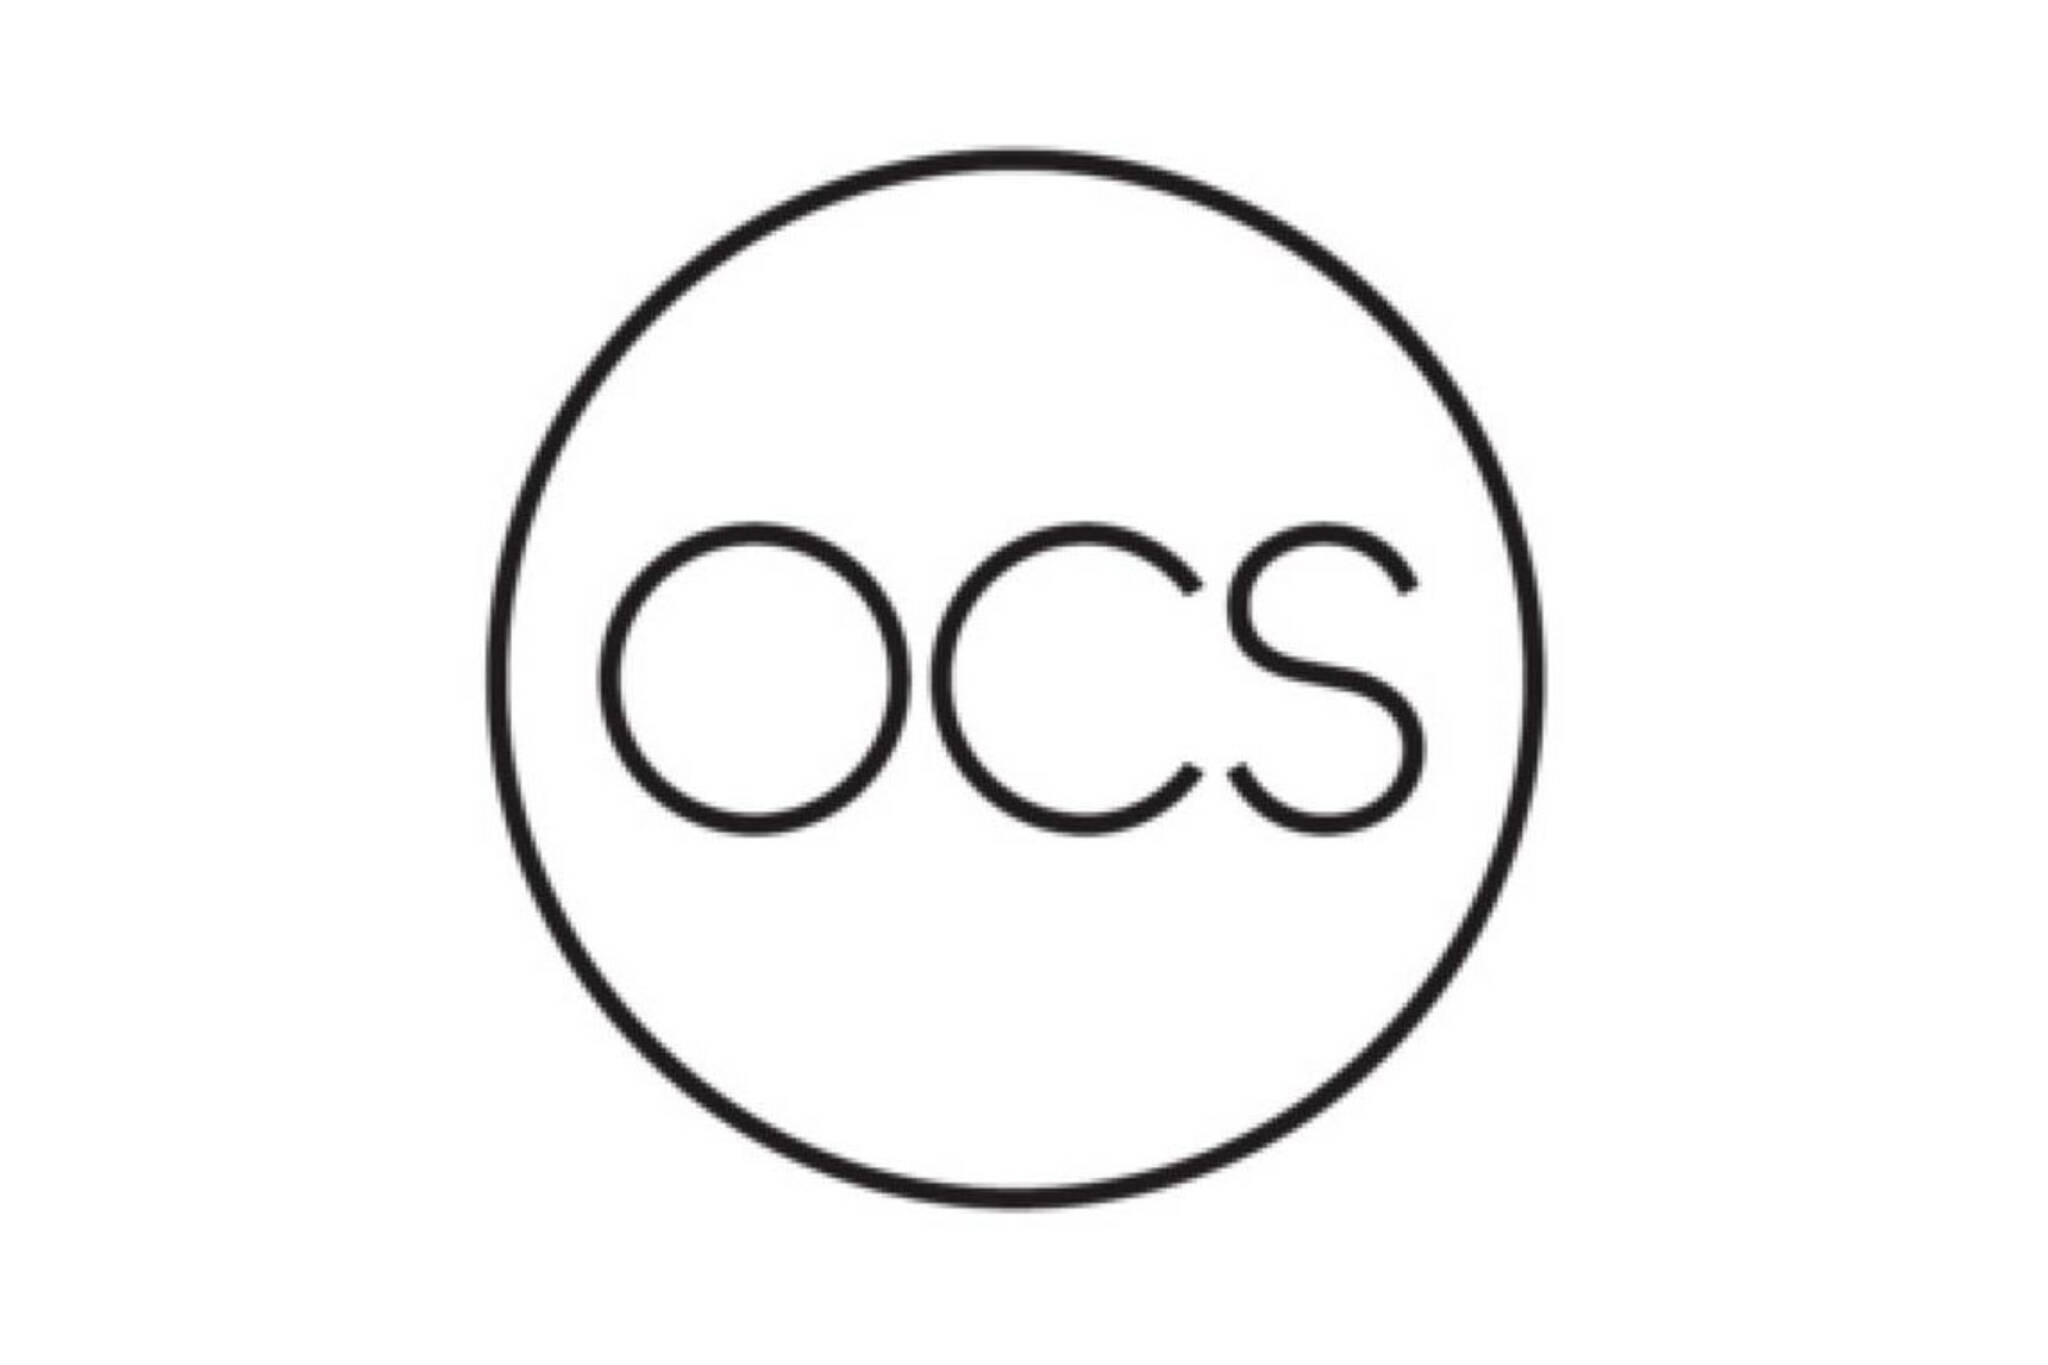 OCS logo cost